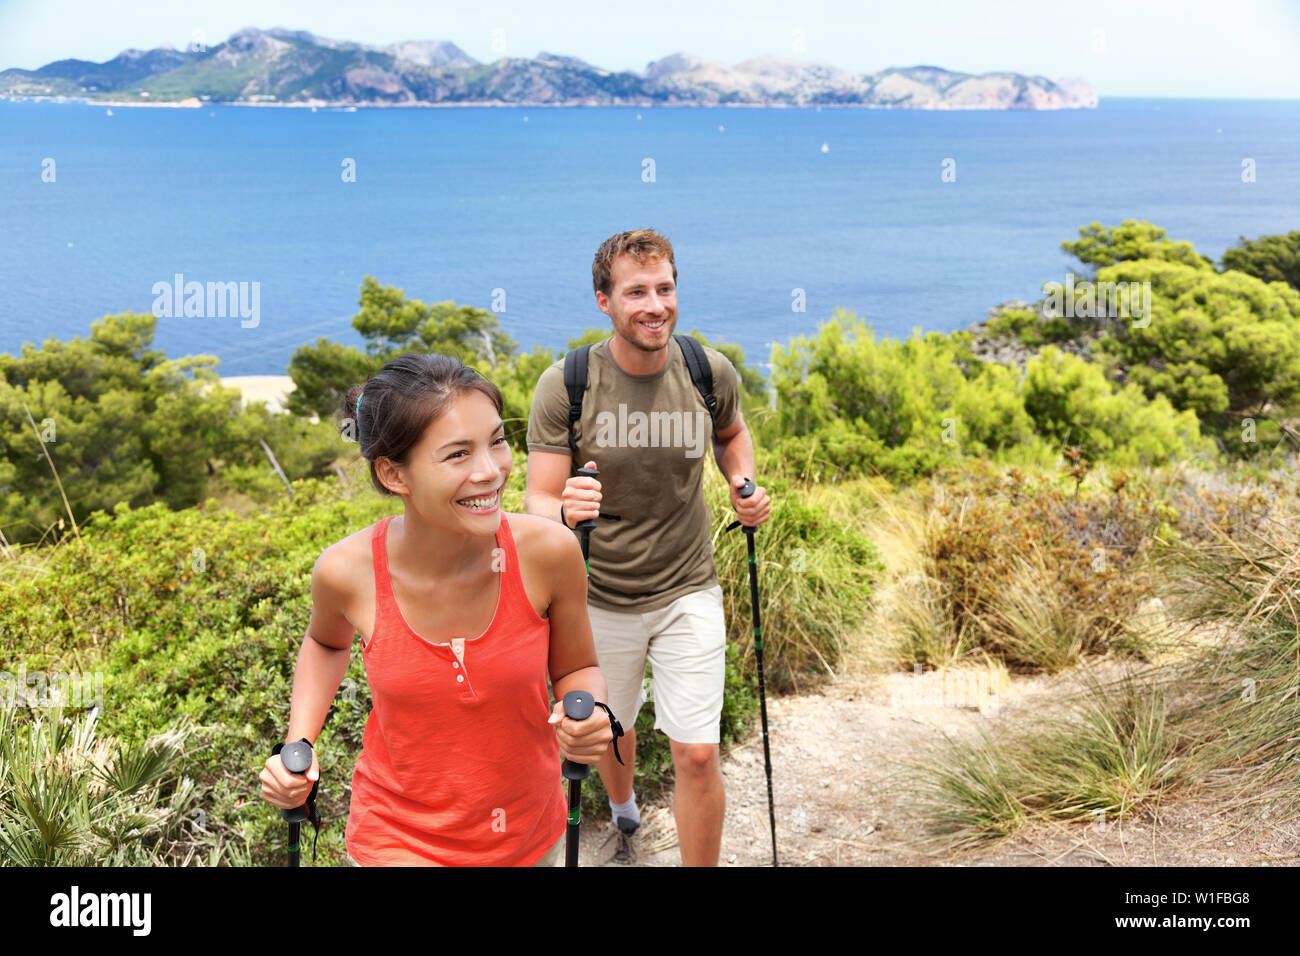 Wanderer Wandern auf Mallorca, Mittelmeer Europa. Junge erwachsene Paare wandern in schöner Natur Landschaft an der Küste von Mallorca, Balearen, Spanien. Berühmte Europäische Reiseziel im Sommer. Stockfoto